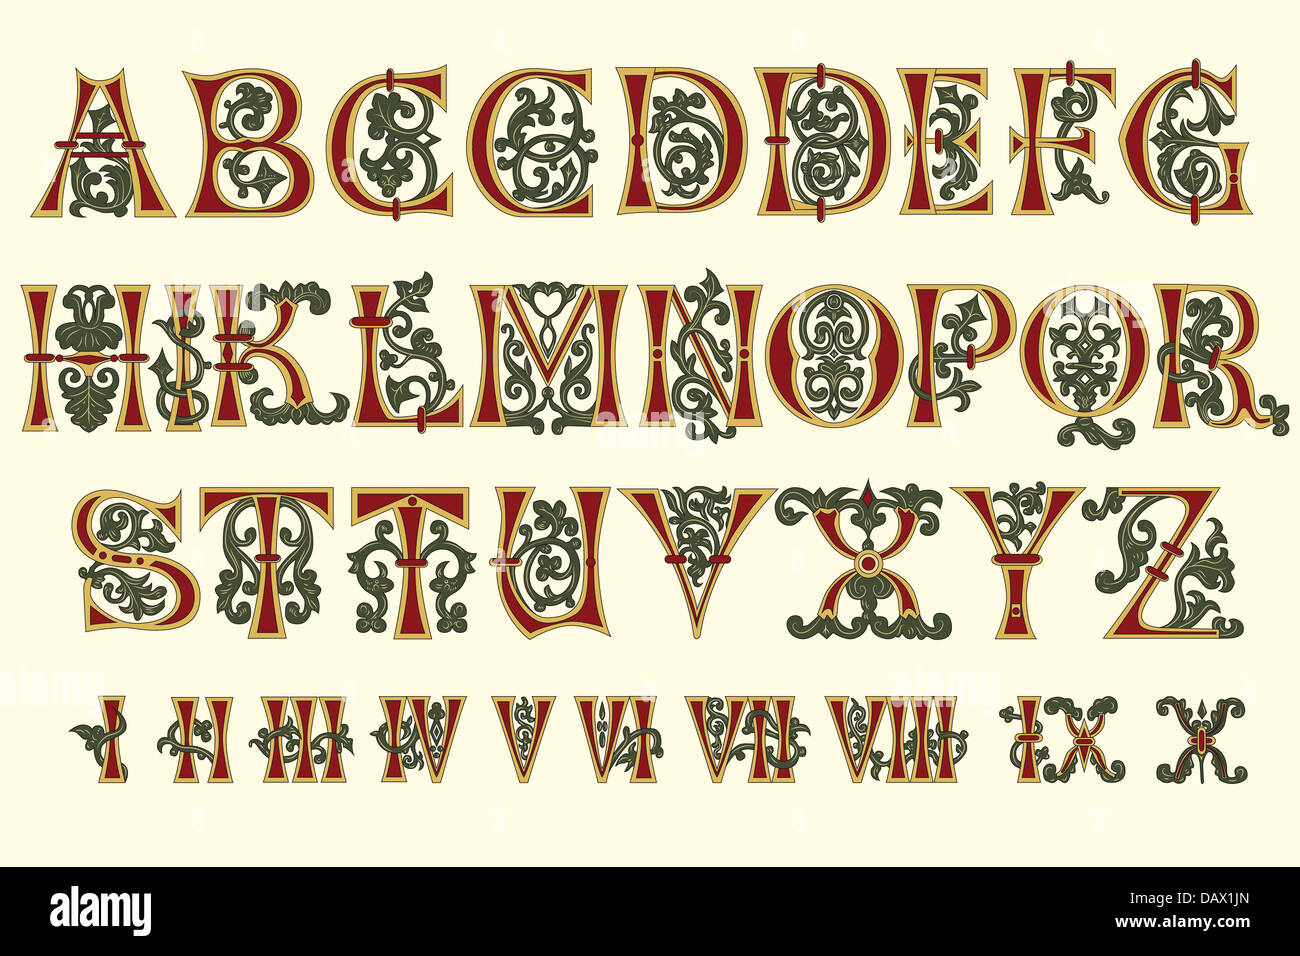 Alphabet-mittelalterlichen und römischen Ziffern des elften Jahrhunderts Stockfoto